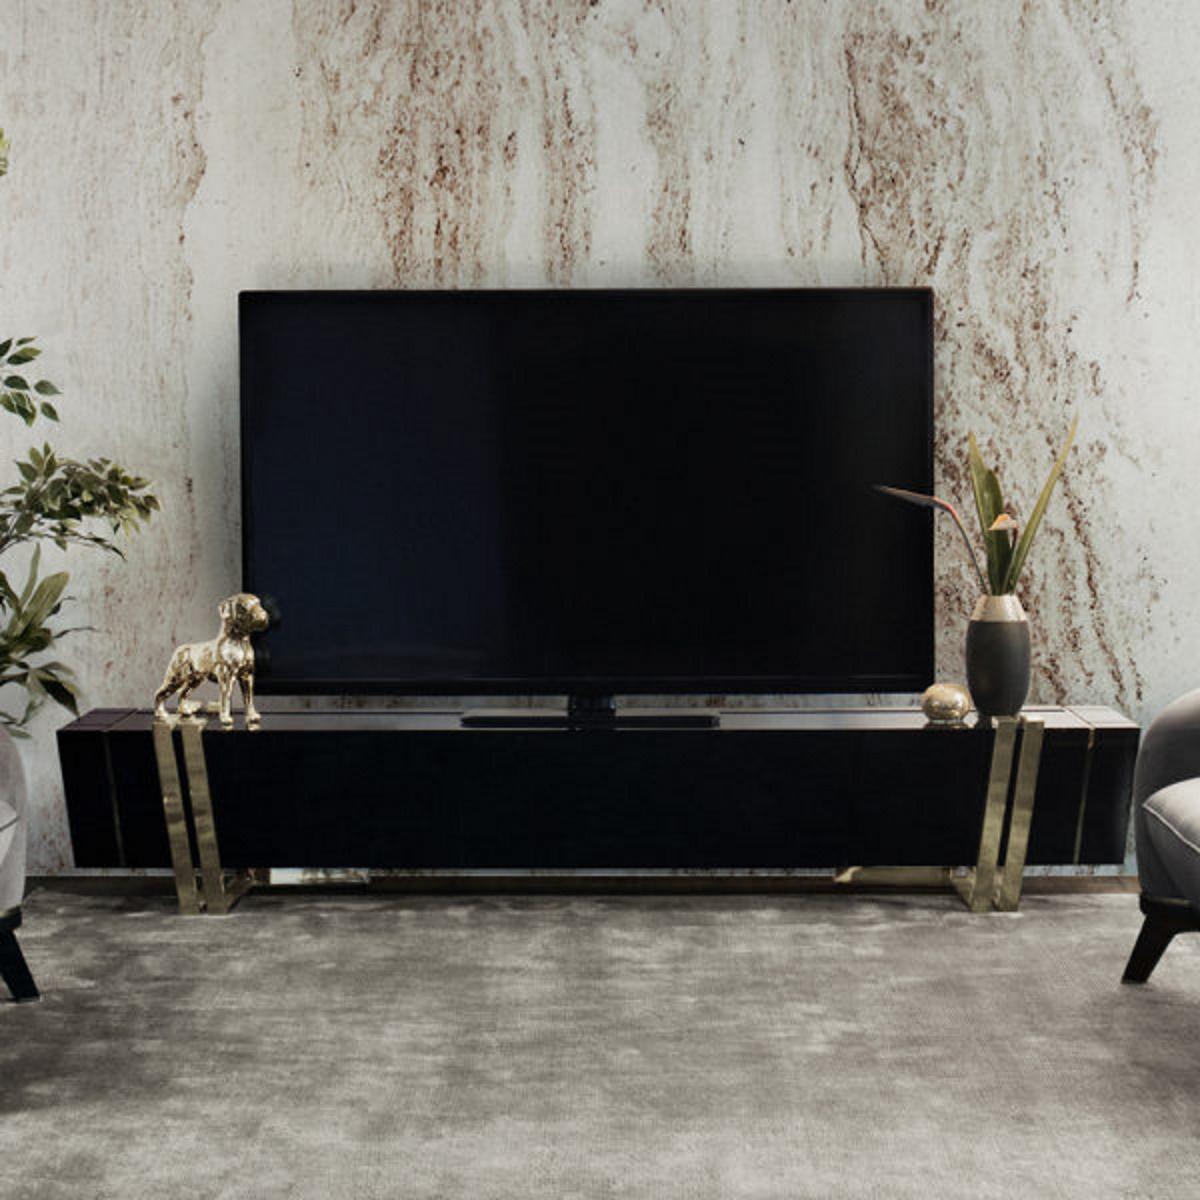 Der TV-Schrank ist ein prägendes Element, das jeden Raum, in dem es steht, verändert und ihm eine herrliche Atmosphäre verleiht. Ein gewagtes, aber elegantes Gleichgewicht zwischen den besten MATERIALEN: Nero Marquina-Marmor, vergoldetes Messing und